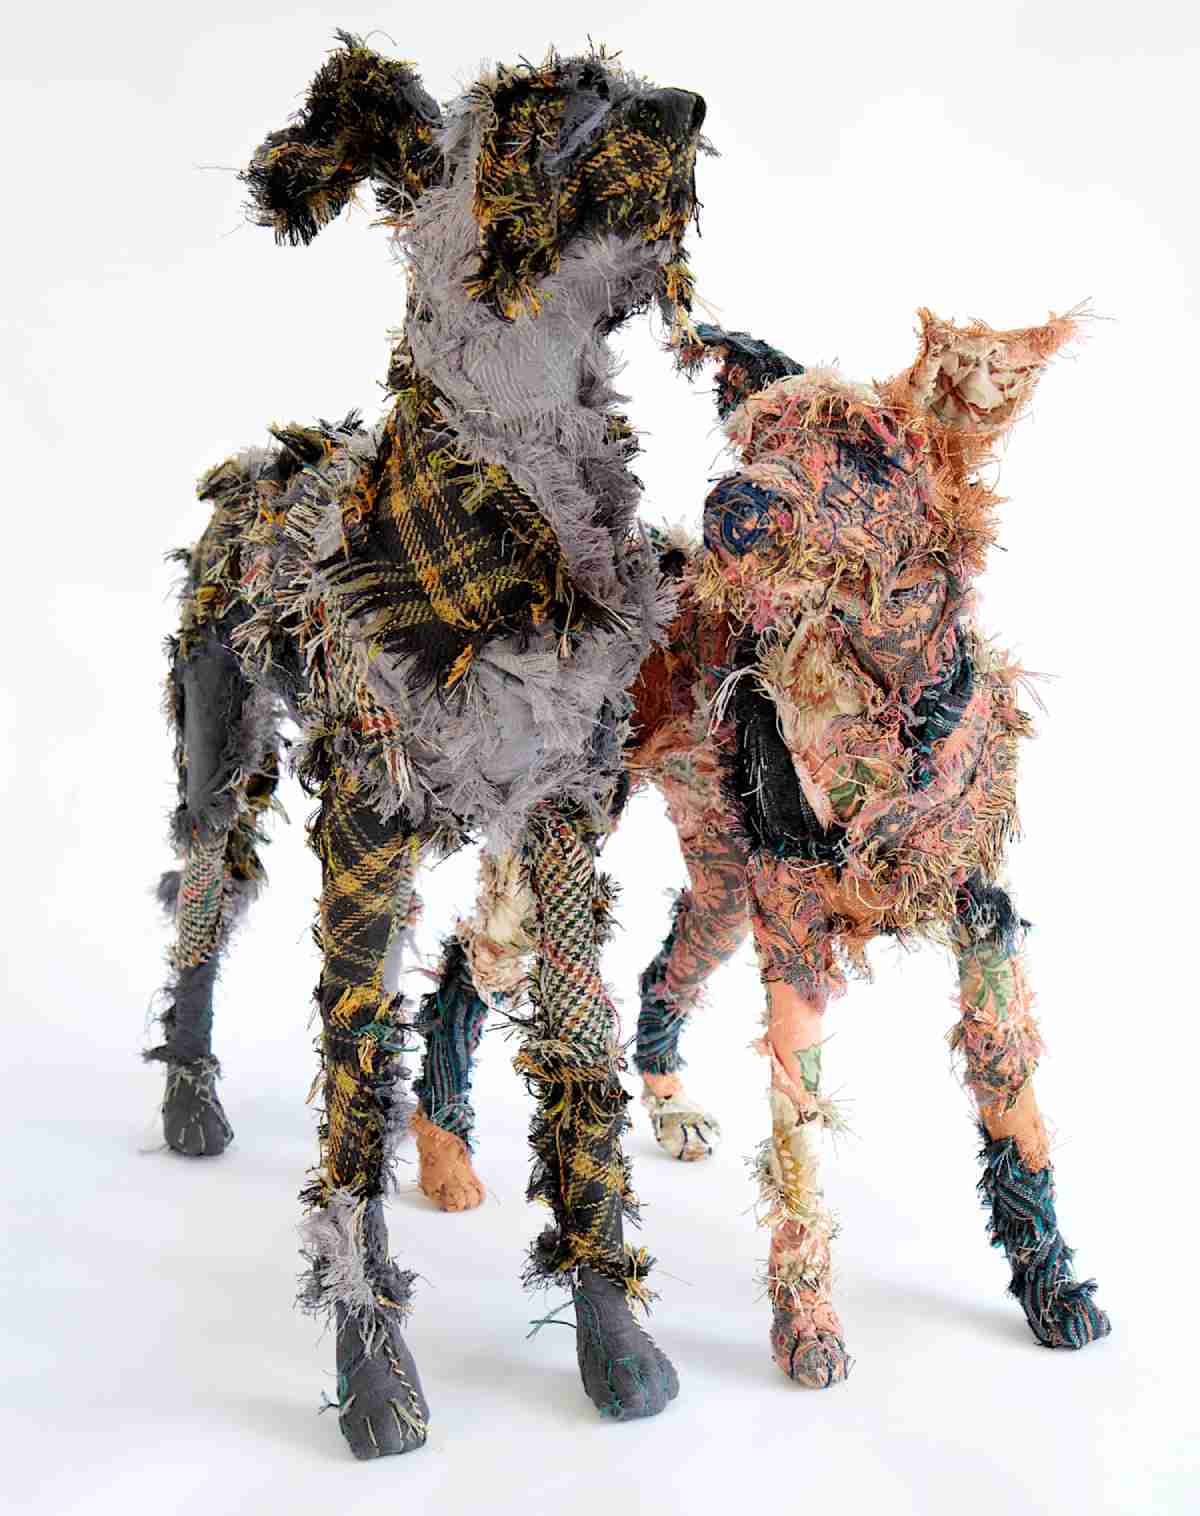 Artista cria esculturas de cachorros usando apenas retalhos, e o resultado é impressionante